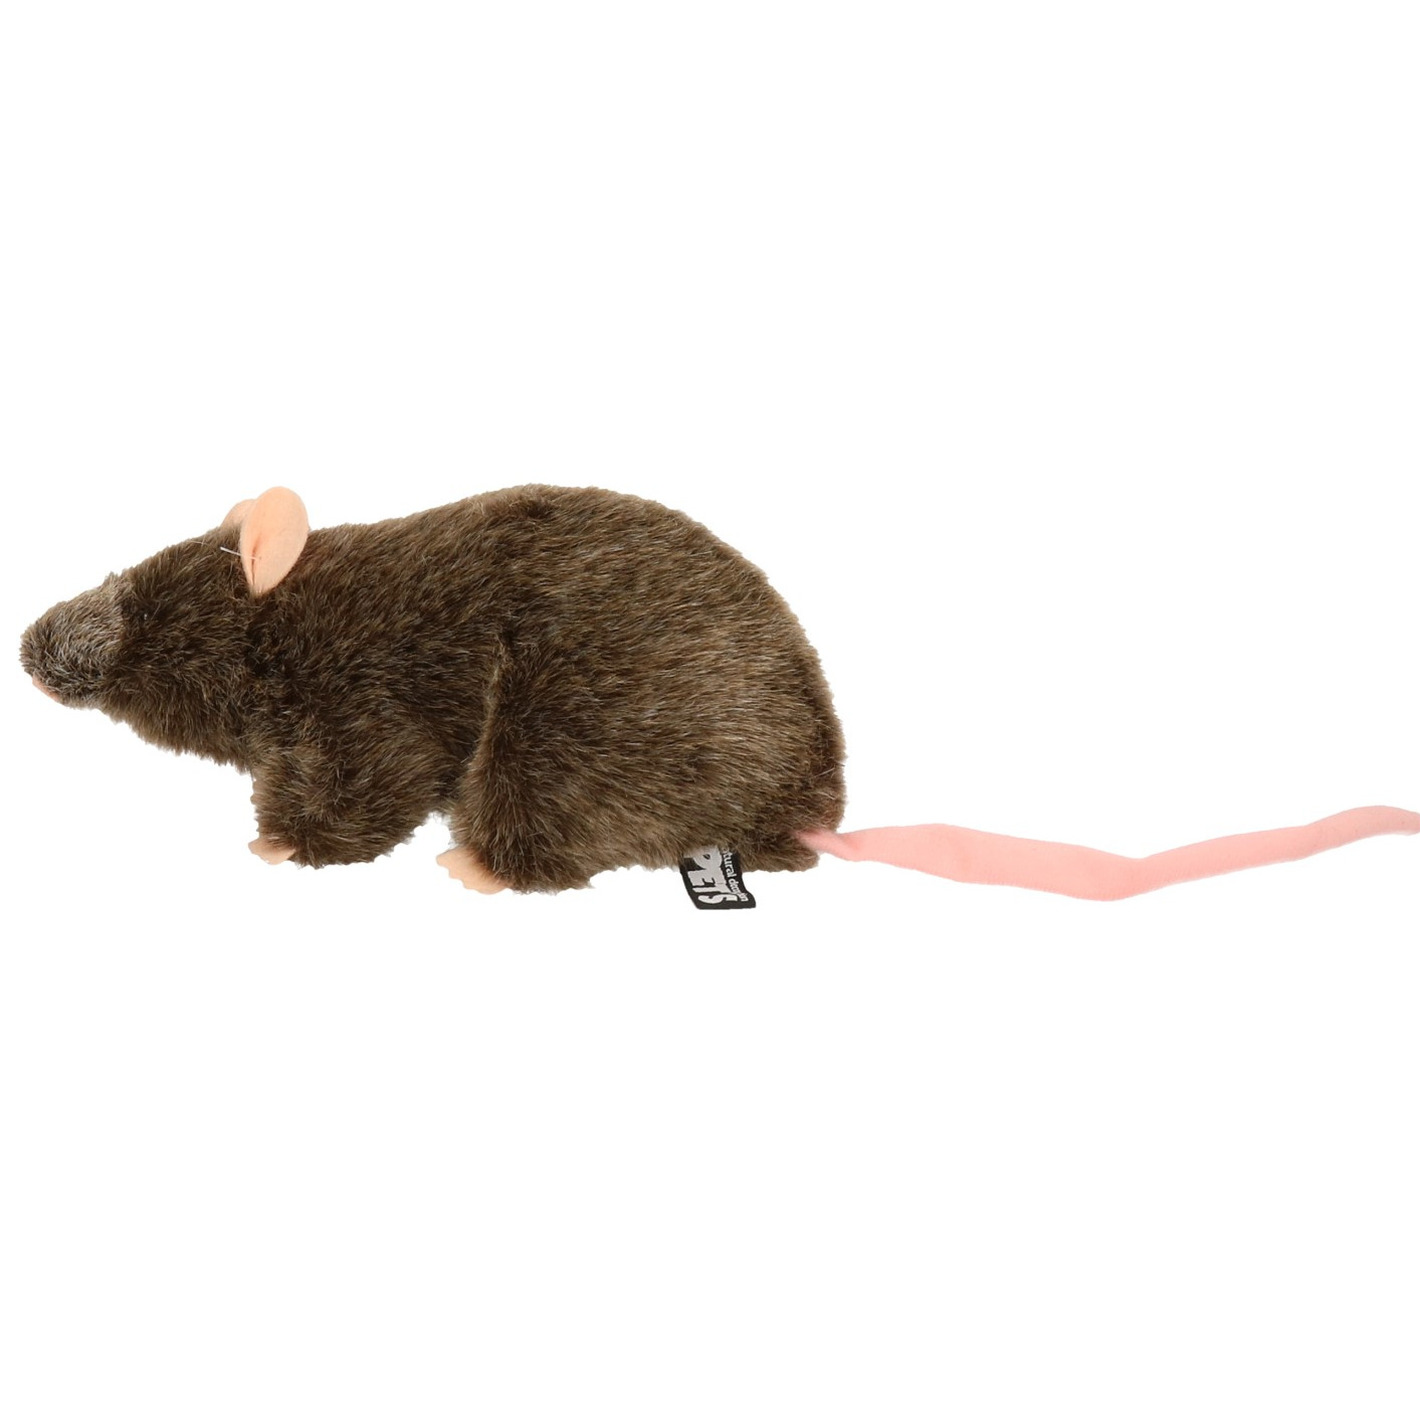 Afbeelding Bruine ratten knuffels 22 cm knuffeldieren door Animals Giftshop